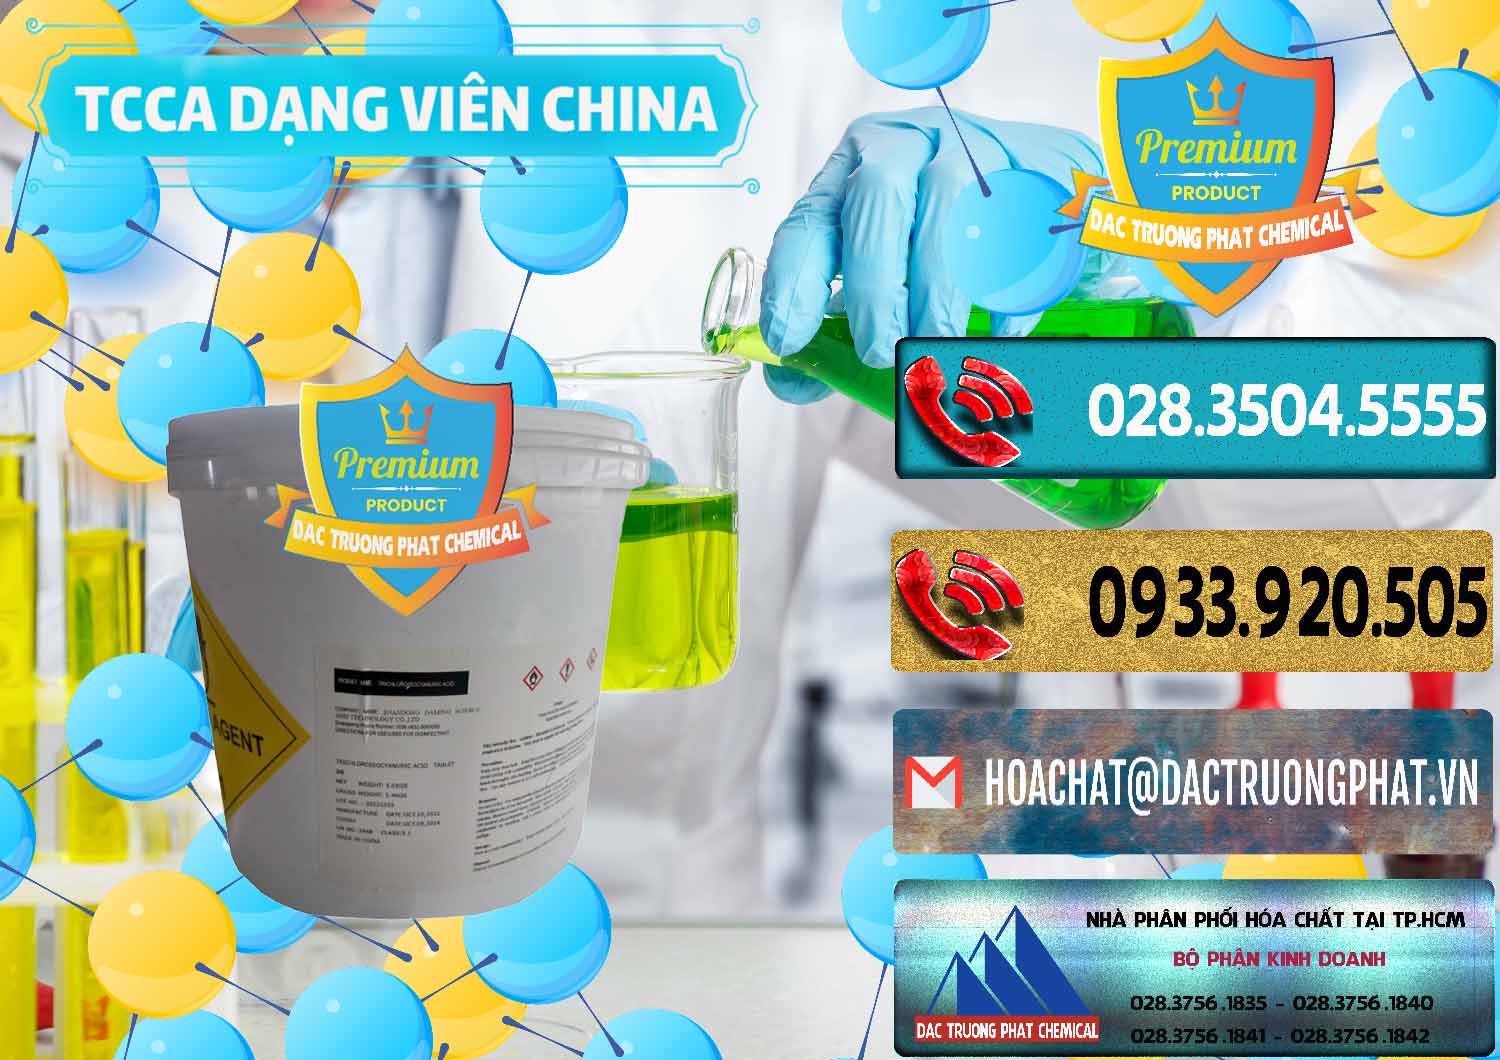 Bán ( cung ứng ) TCCA - Acid Trichloroisocyanuric Dạng Viên Thùng 5kg Trung Quốc China - 0379 - Cung cấp & bán hóa chất tại TP.HCM - hoachatdetnhuom.com